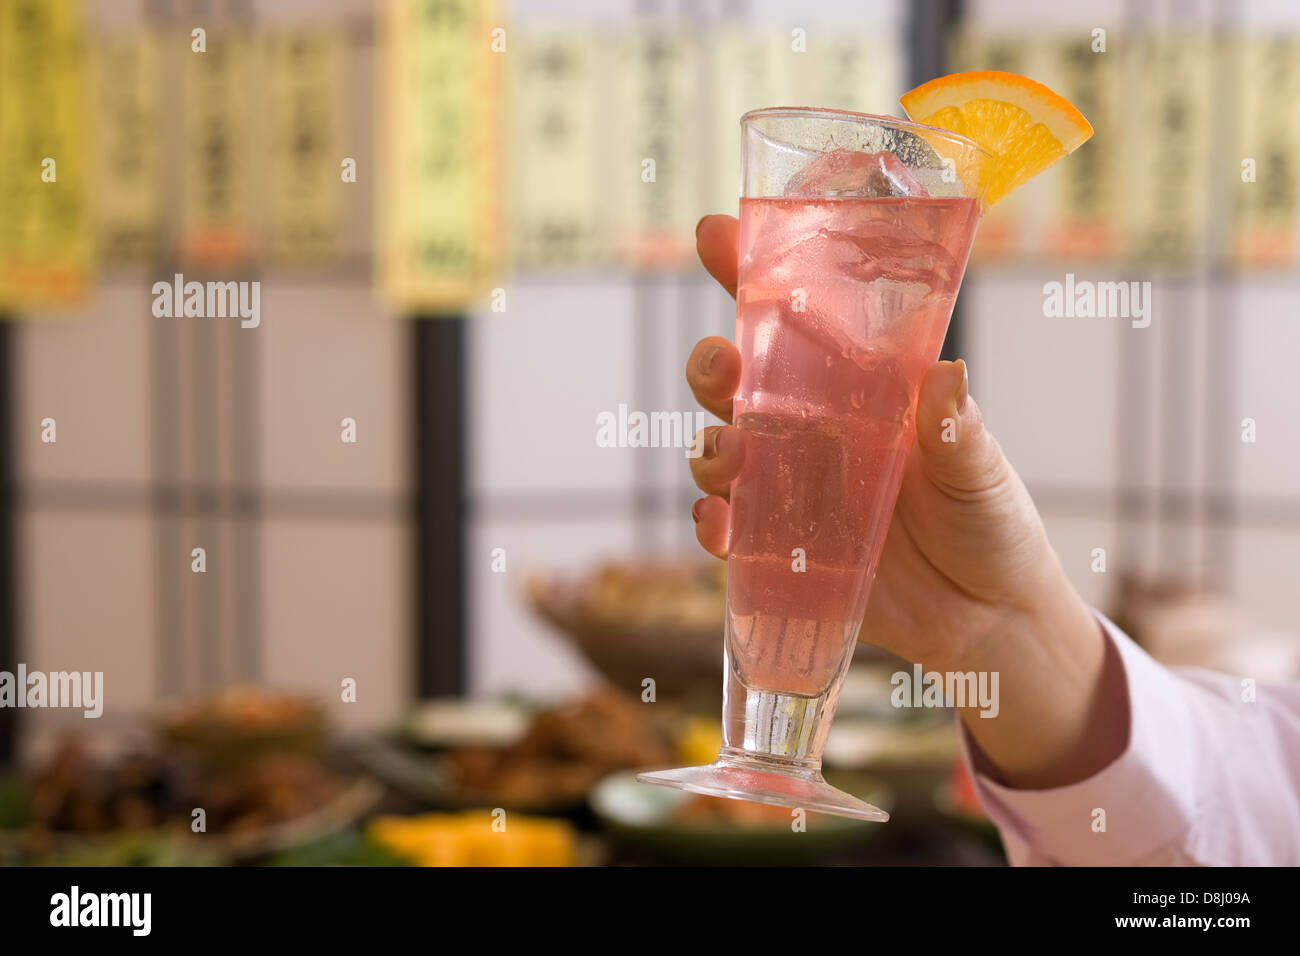 Mano humana sosteniendo una copa de cóctel en Izakaya Foto de stock